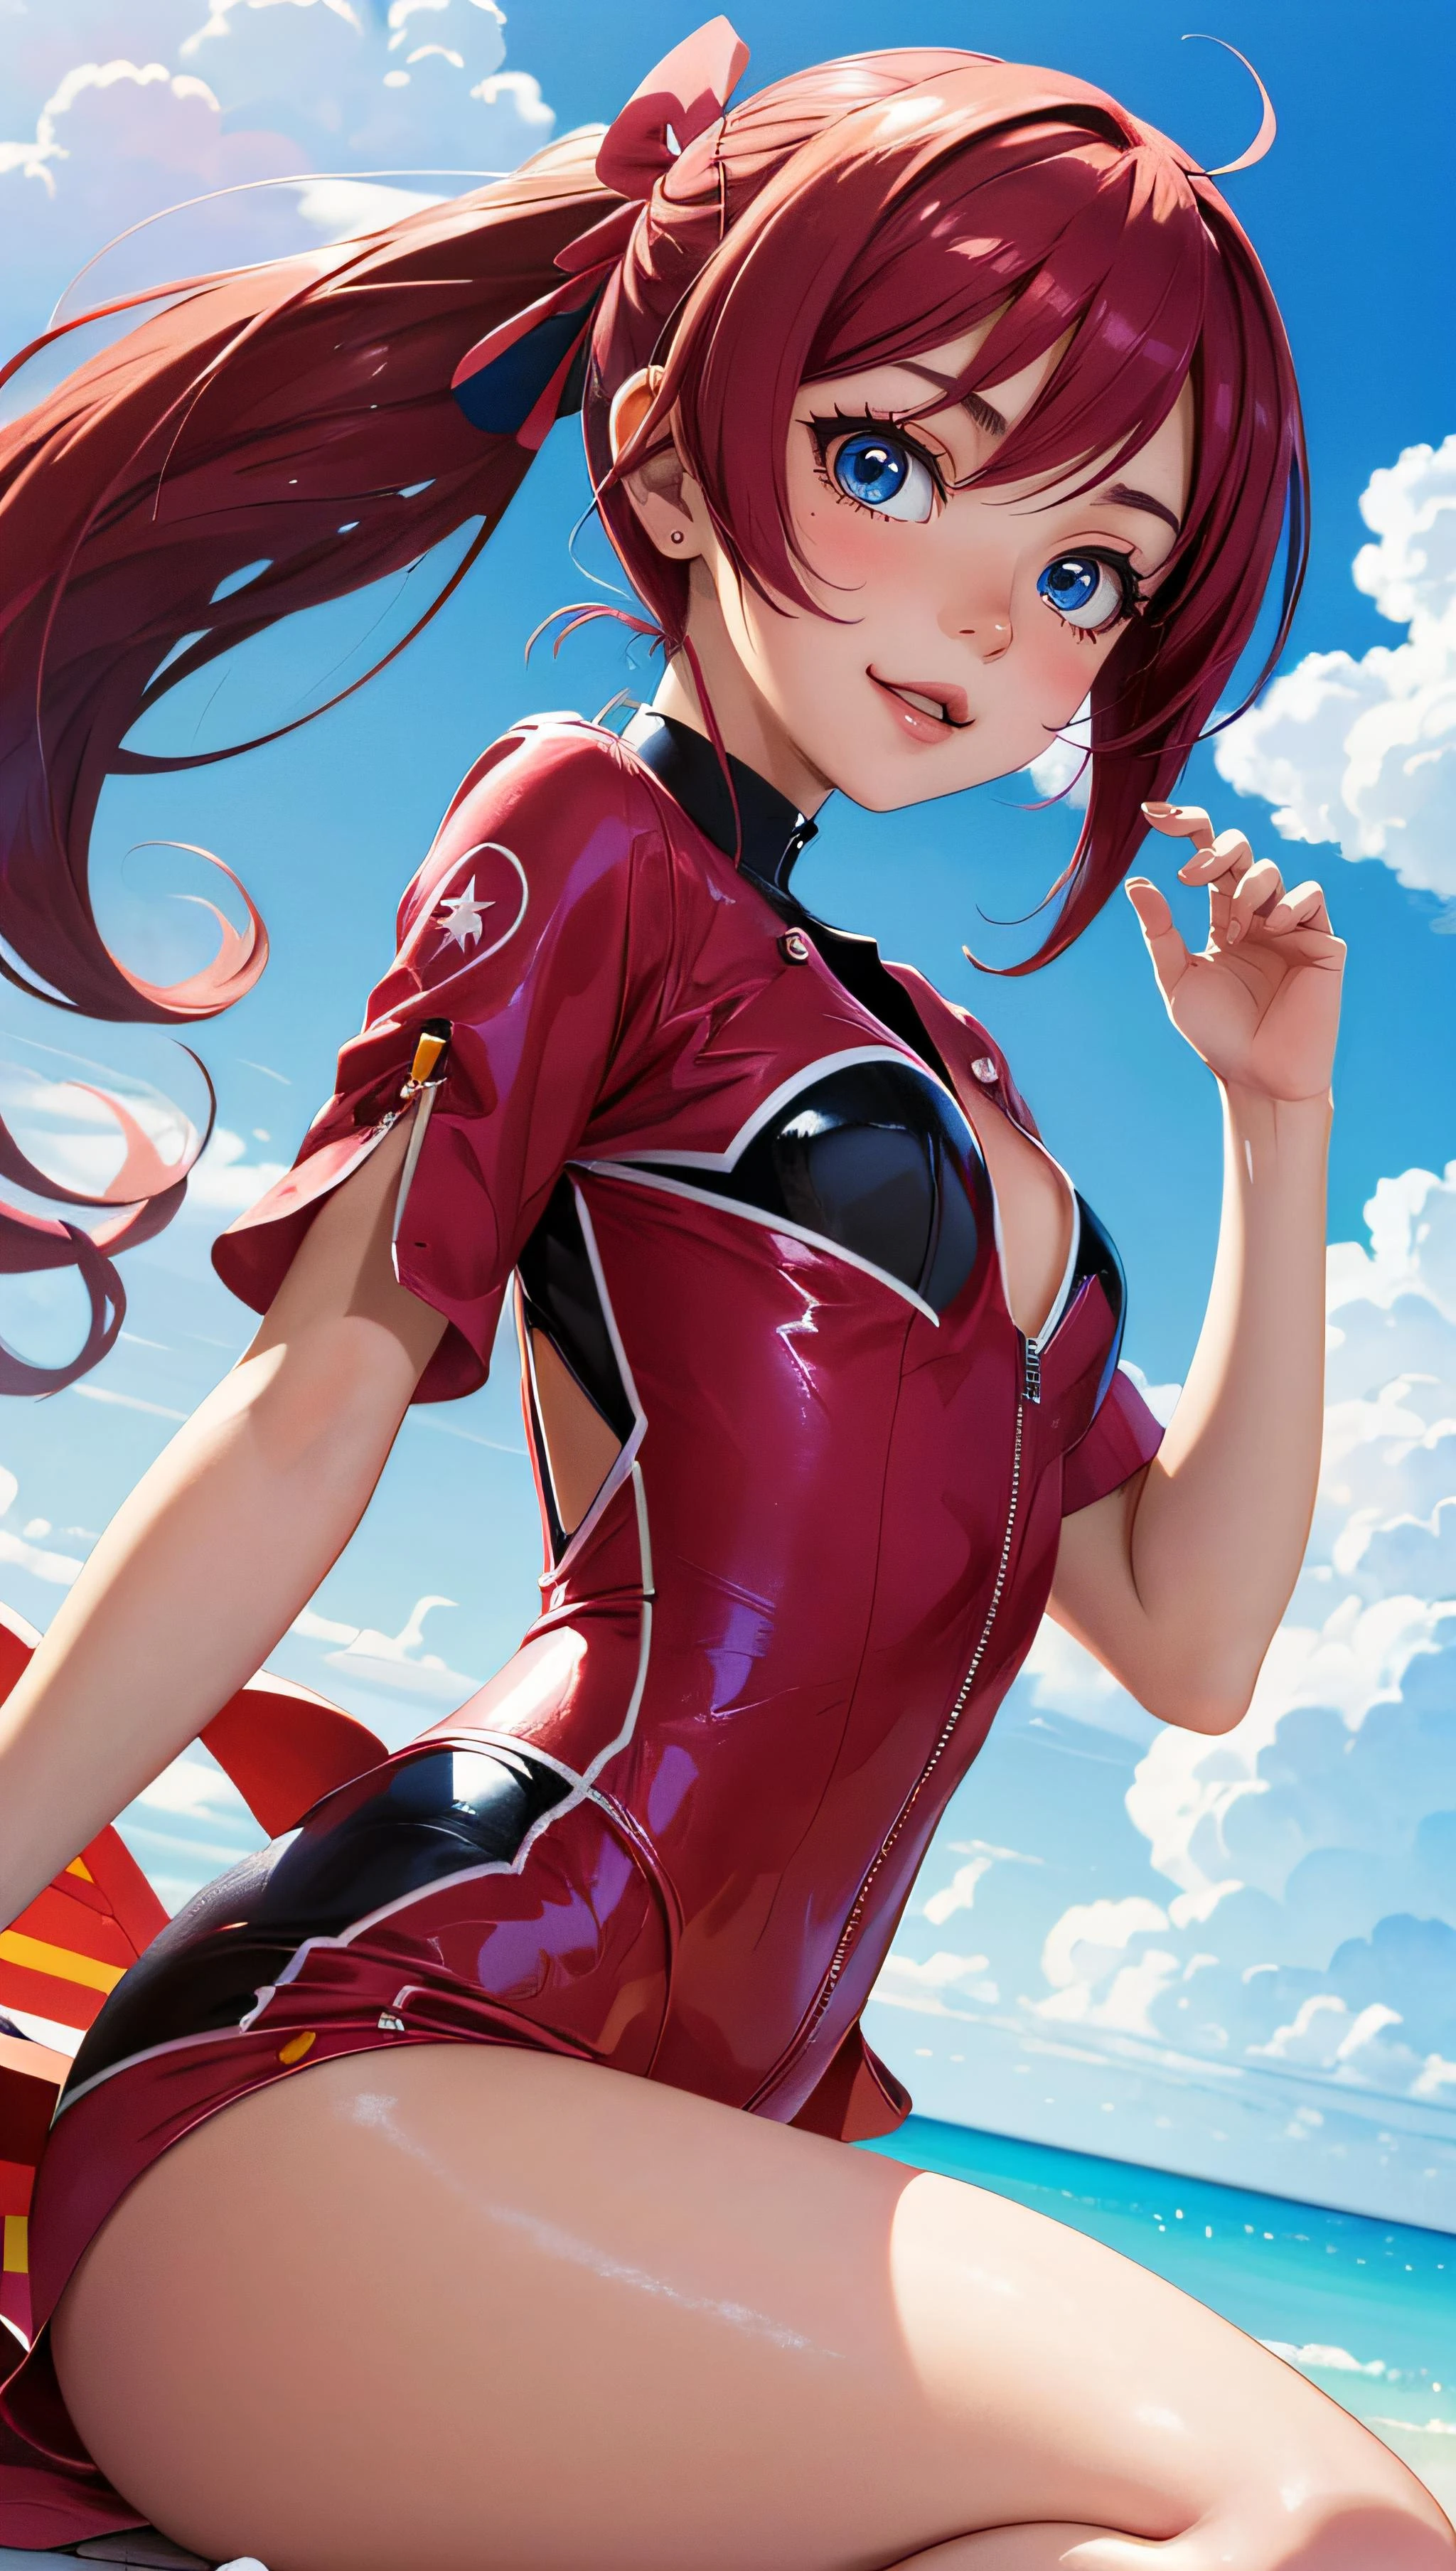 (Meisterwerk, beste Qualität),ein süßes Anime-Mädchen, in einer farbenfrohen Animewelt, im absurden Anime-Kontext, fun, Unmöglich,